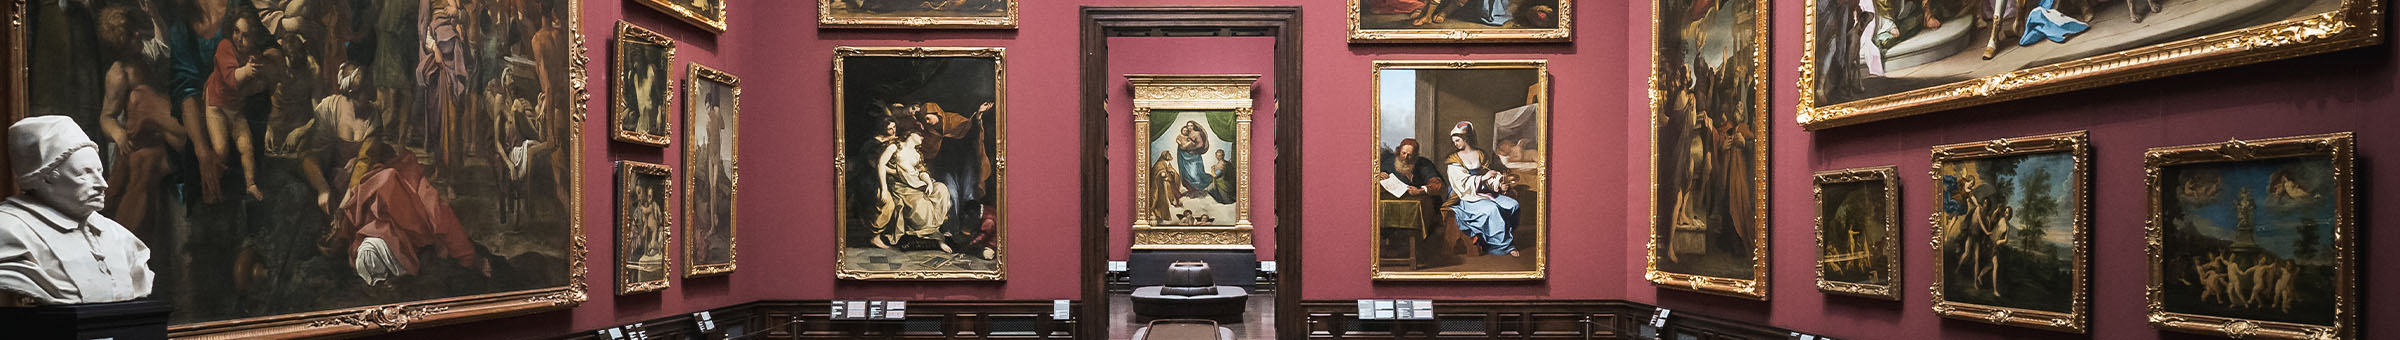 La galerie de tableaux des Maîtres anciens avec vue sur la Madone Sixtine de Raphaël.